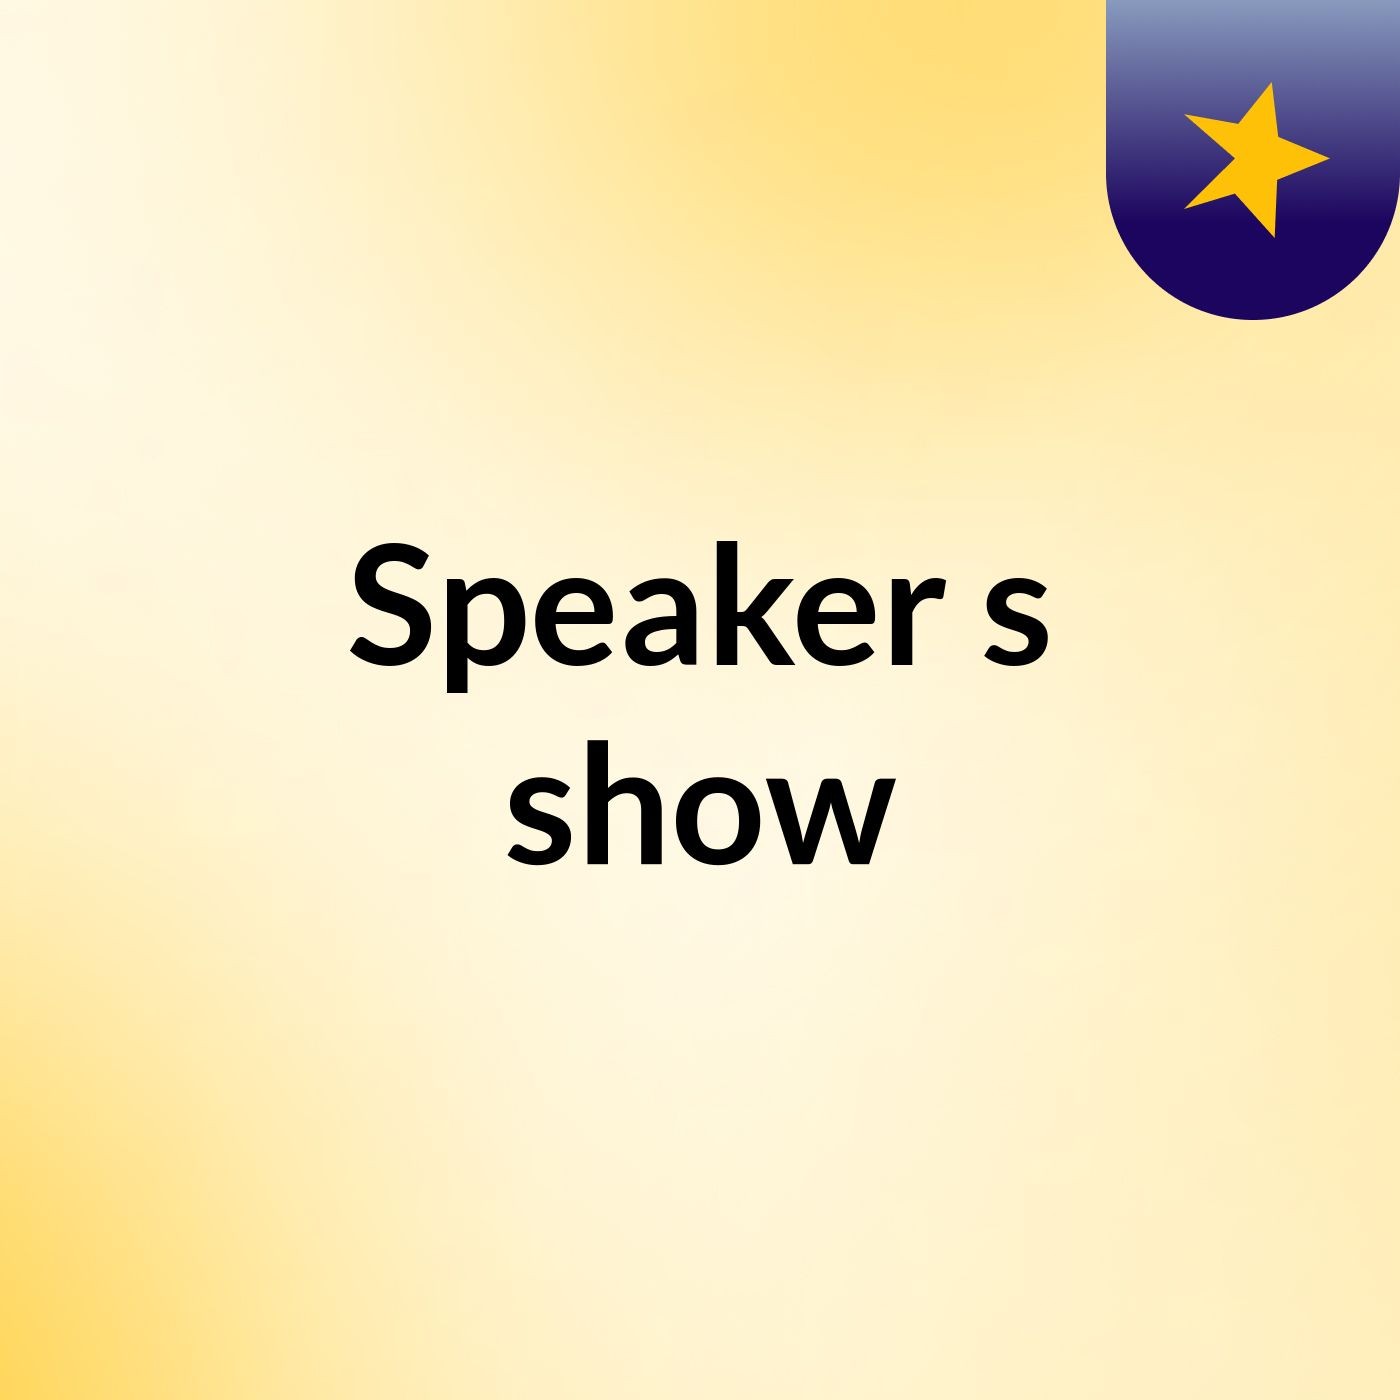 Speaker's show